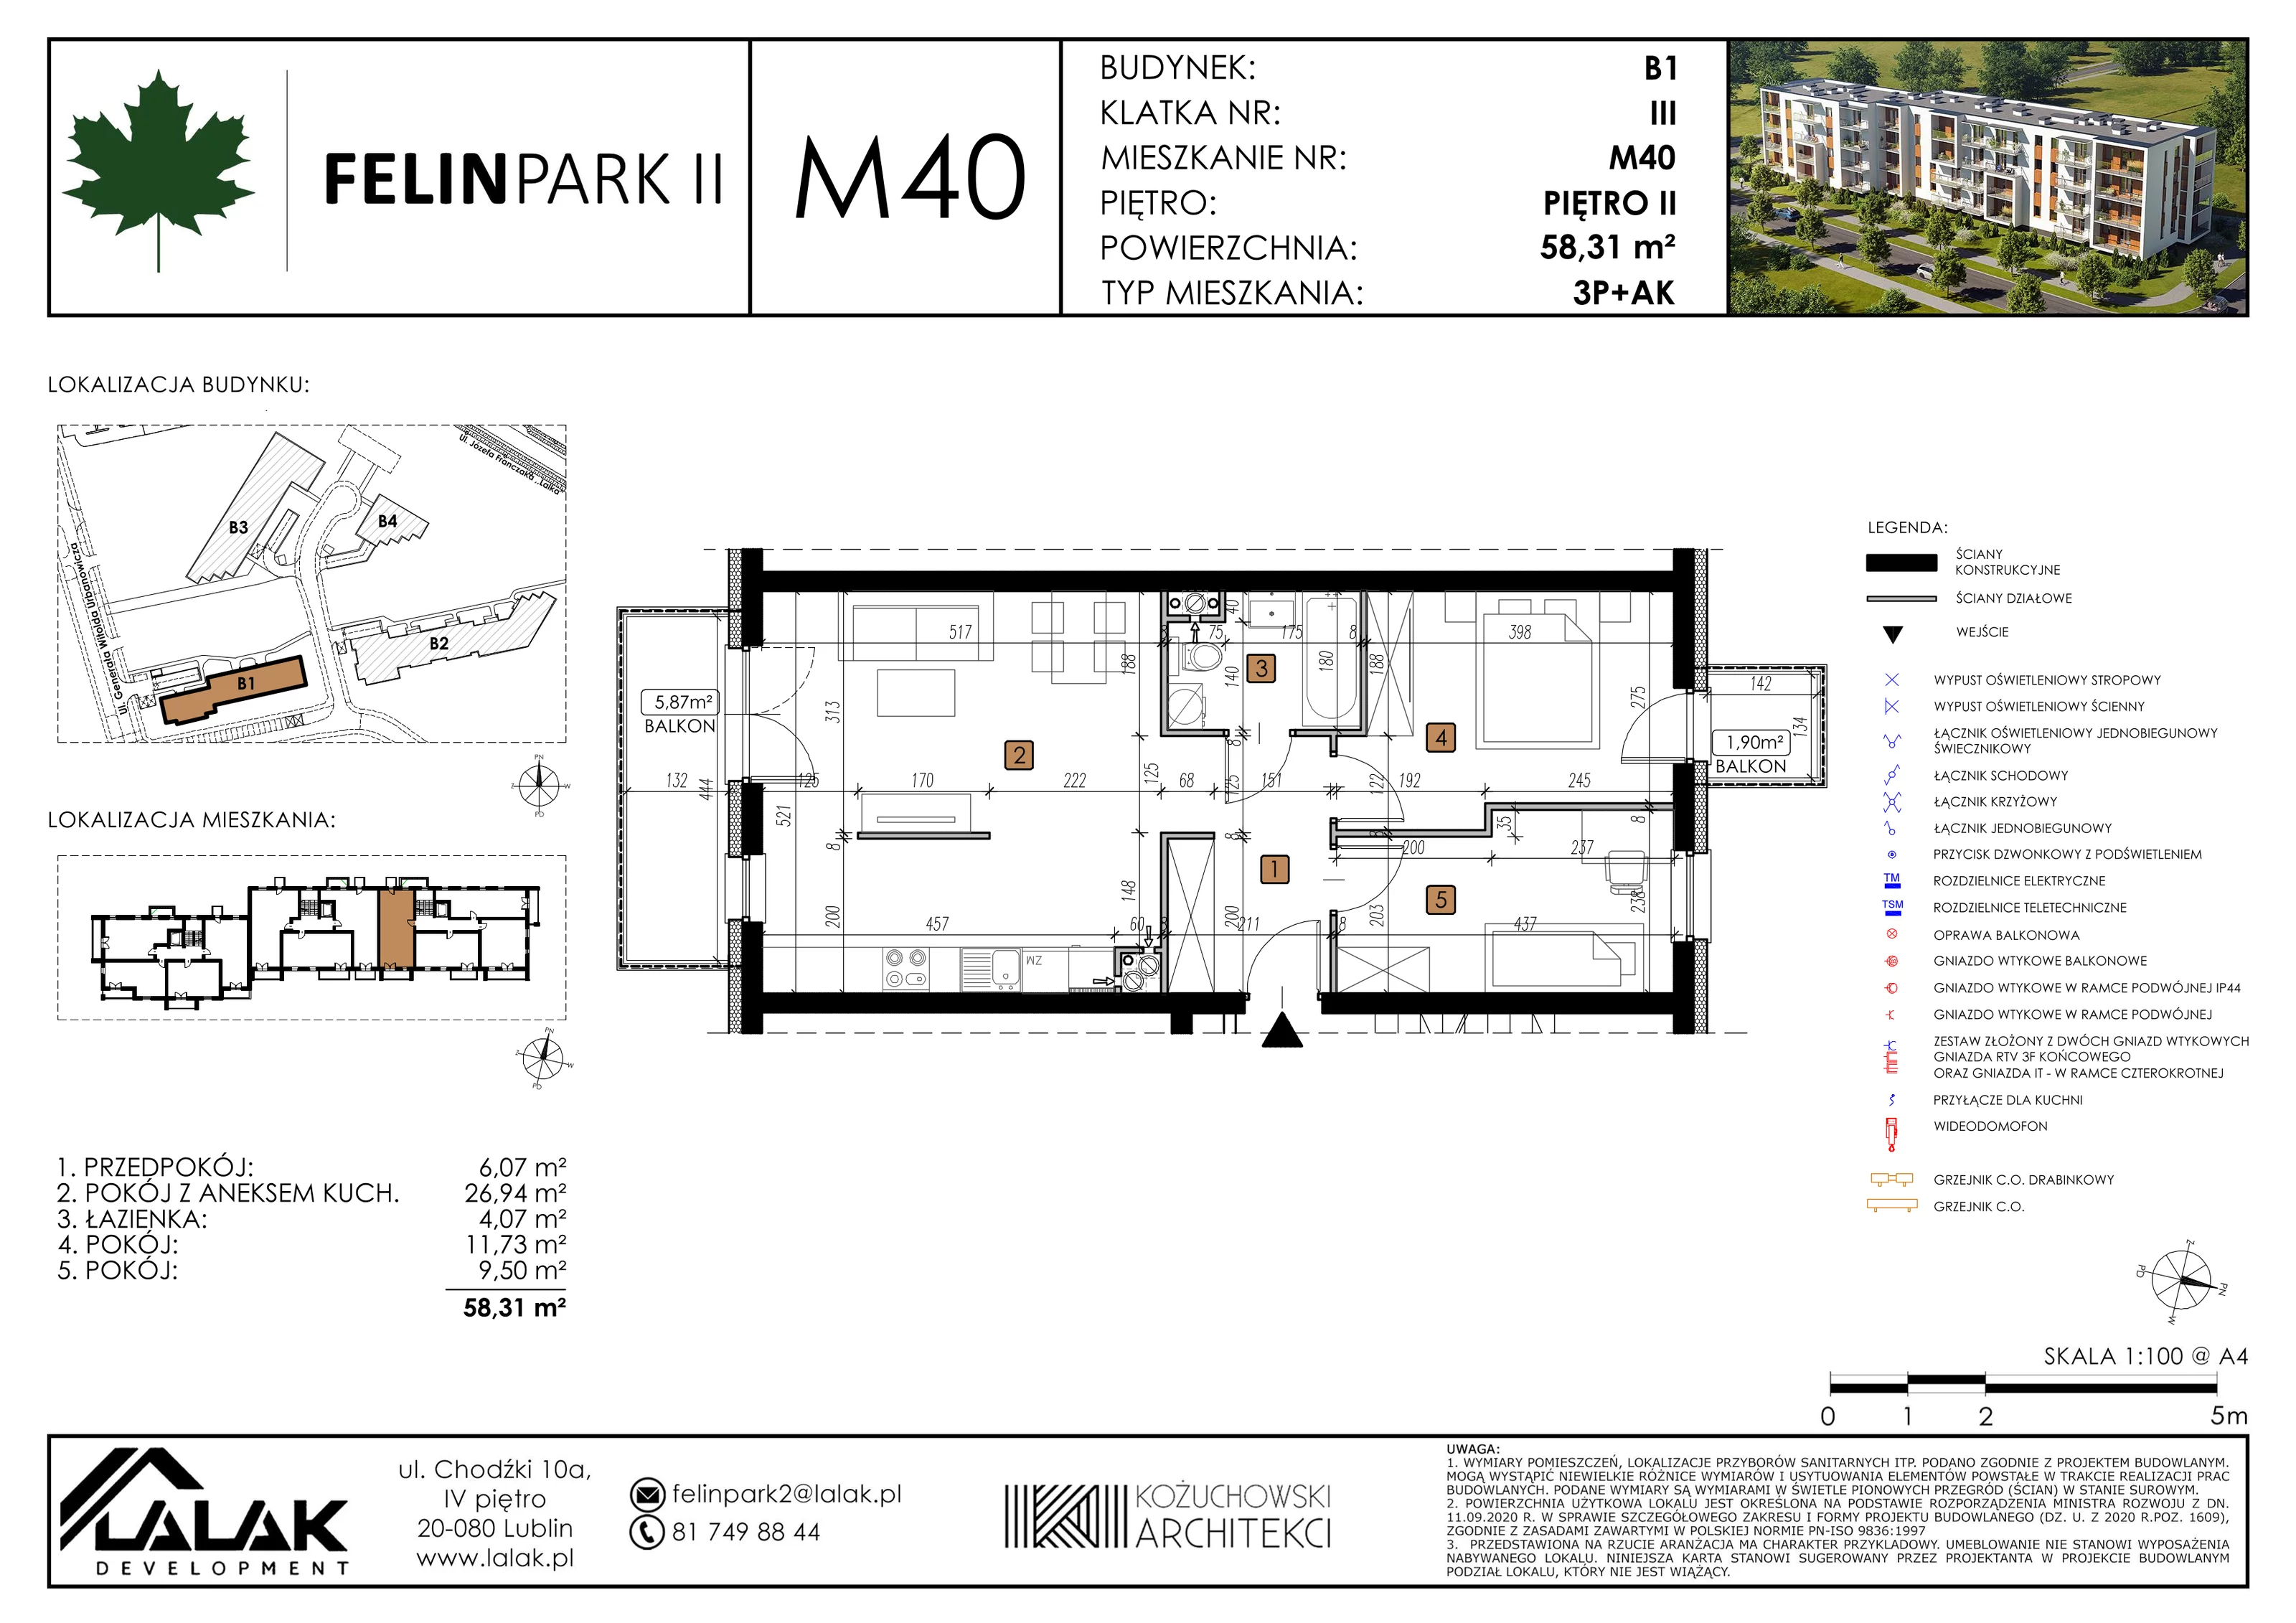 Mieszkanie 58,31 m², piętro 2, oferta nr B1_M40/I, Felin Park II, Lublin, Felin, ul. gen. Stanisława Skalskiego 8-10